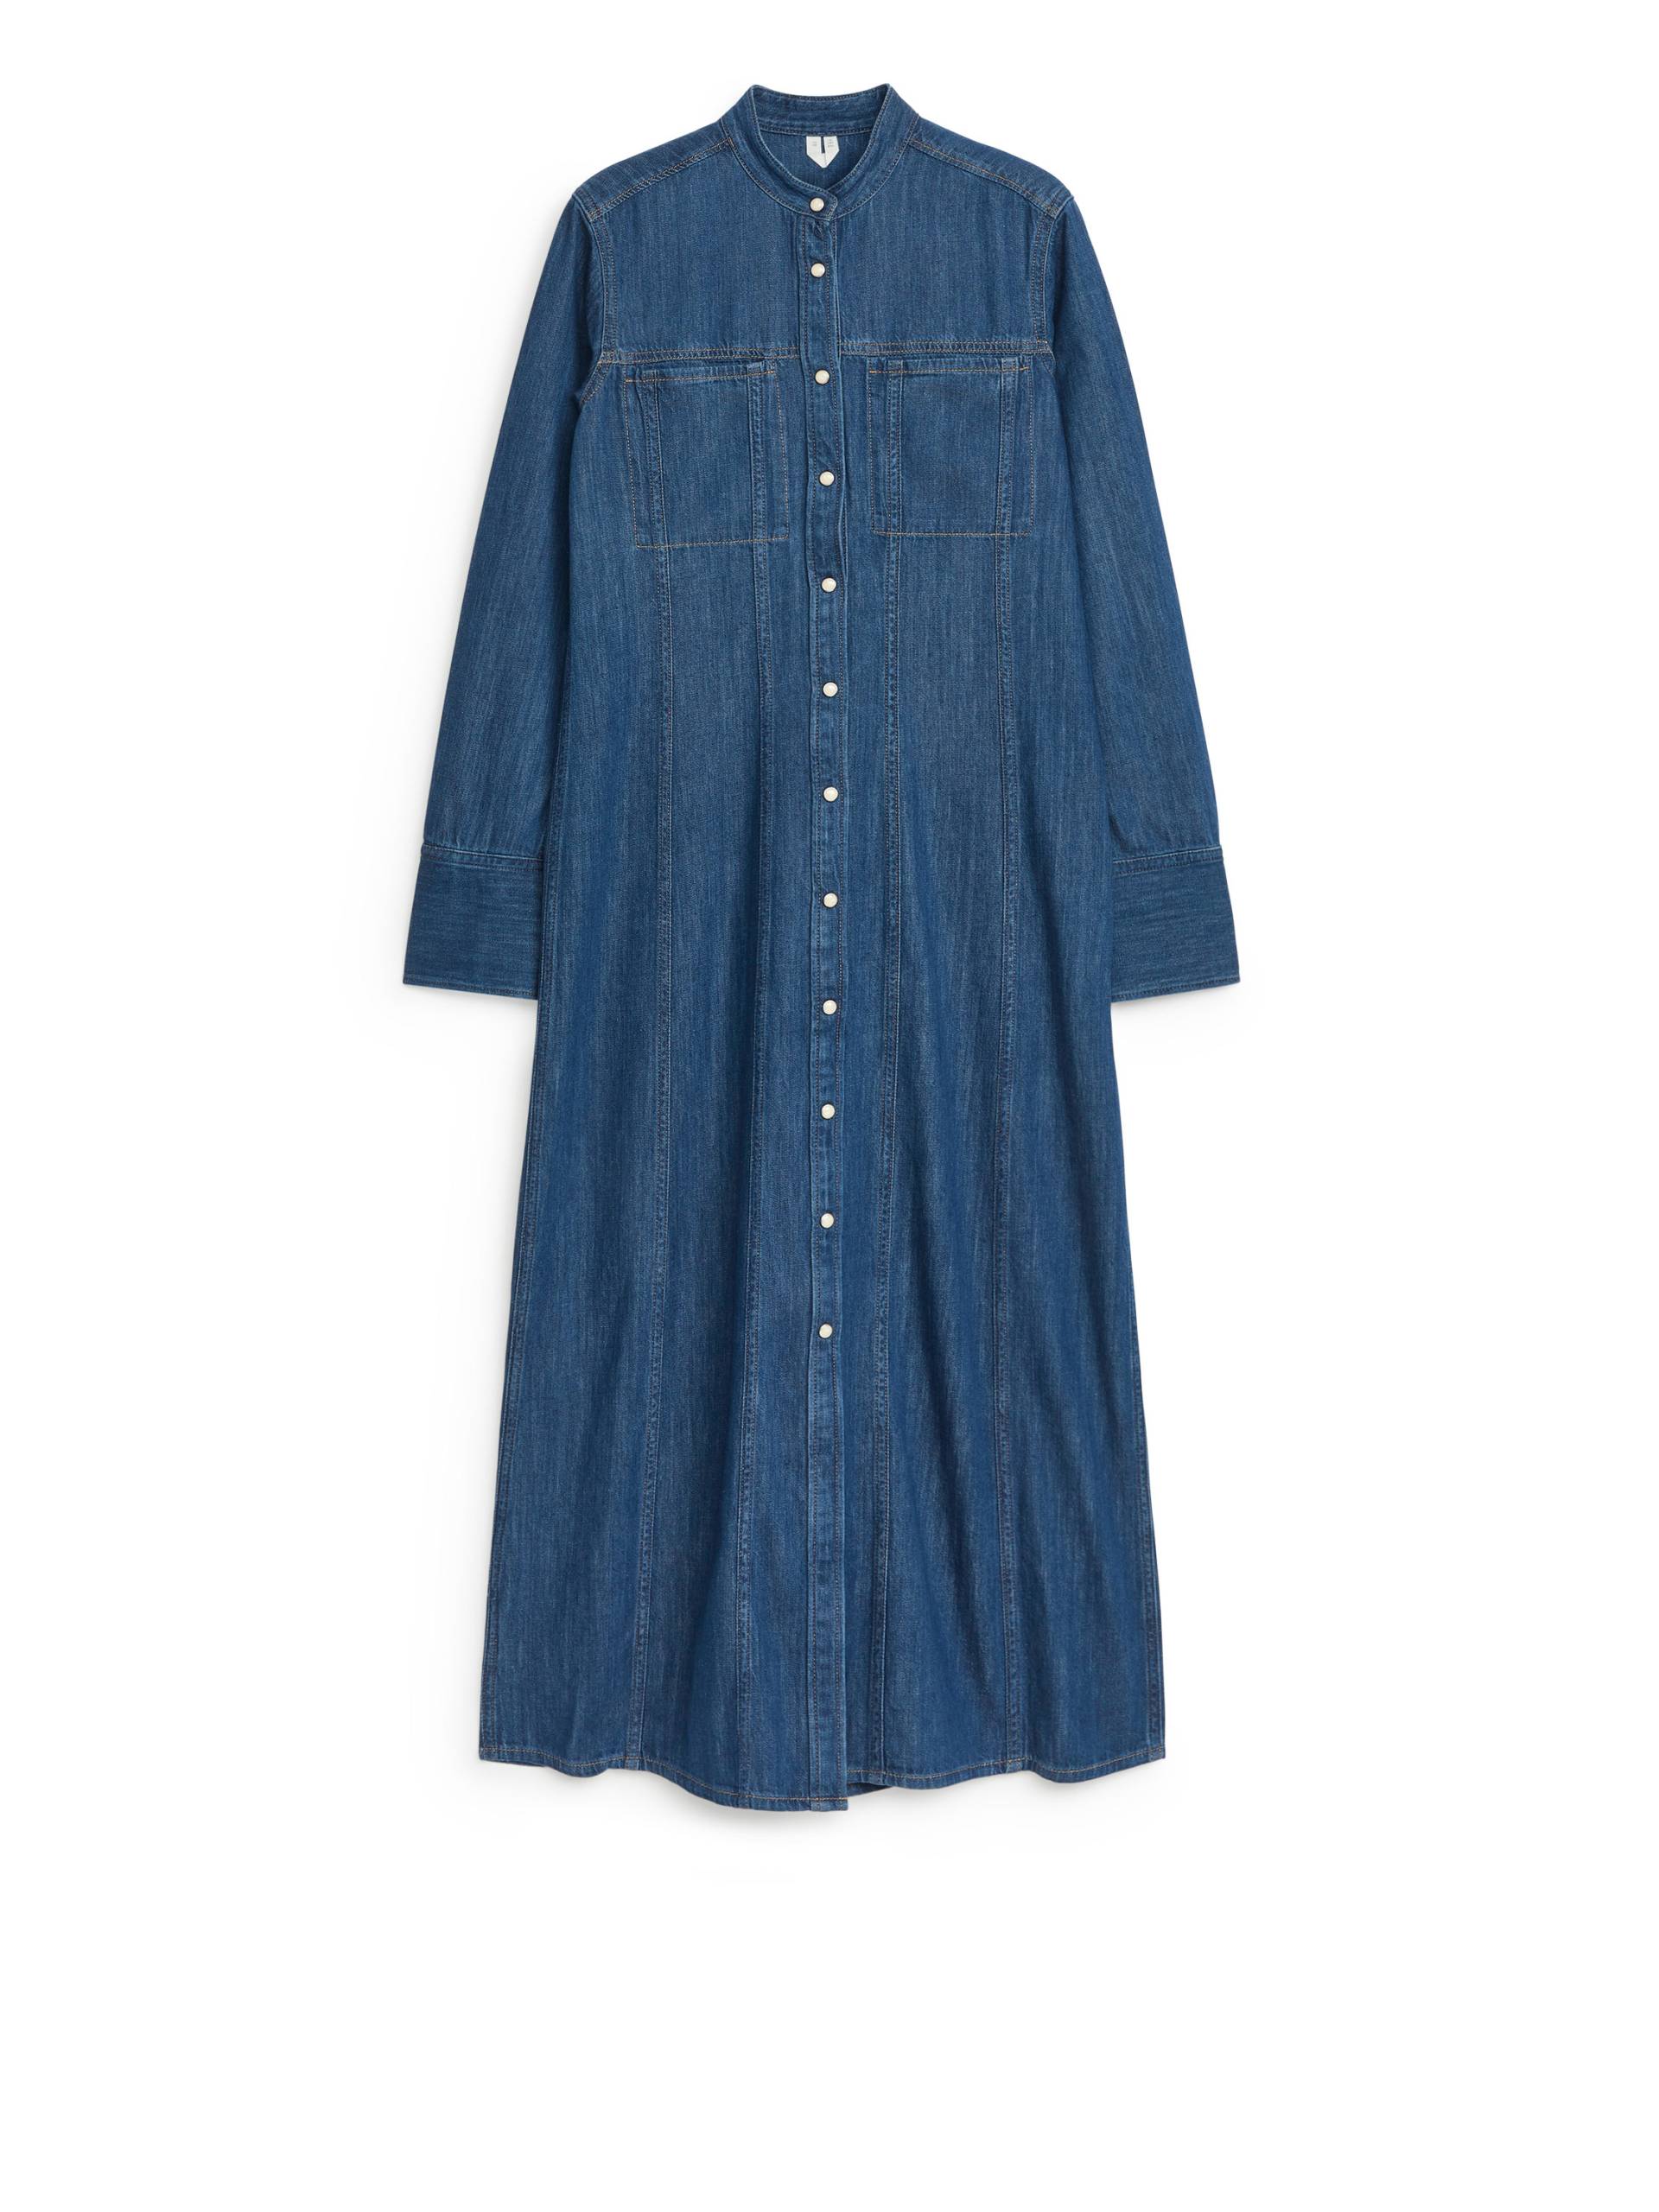 Arket Jeanskleid Blau, Alltagskleider in Größe 34. Farbe: Blue von Arket